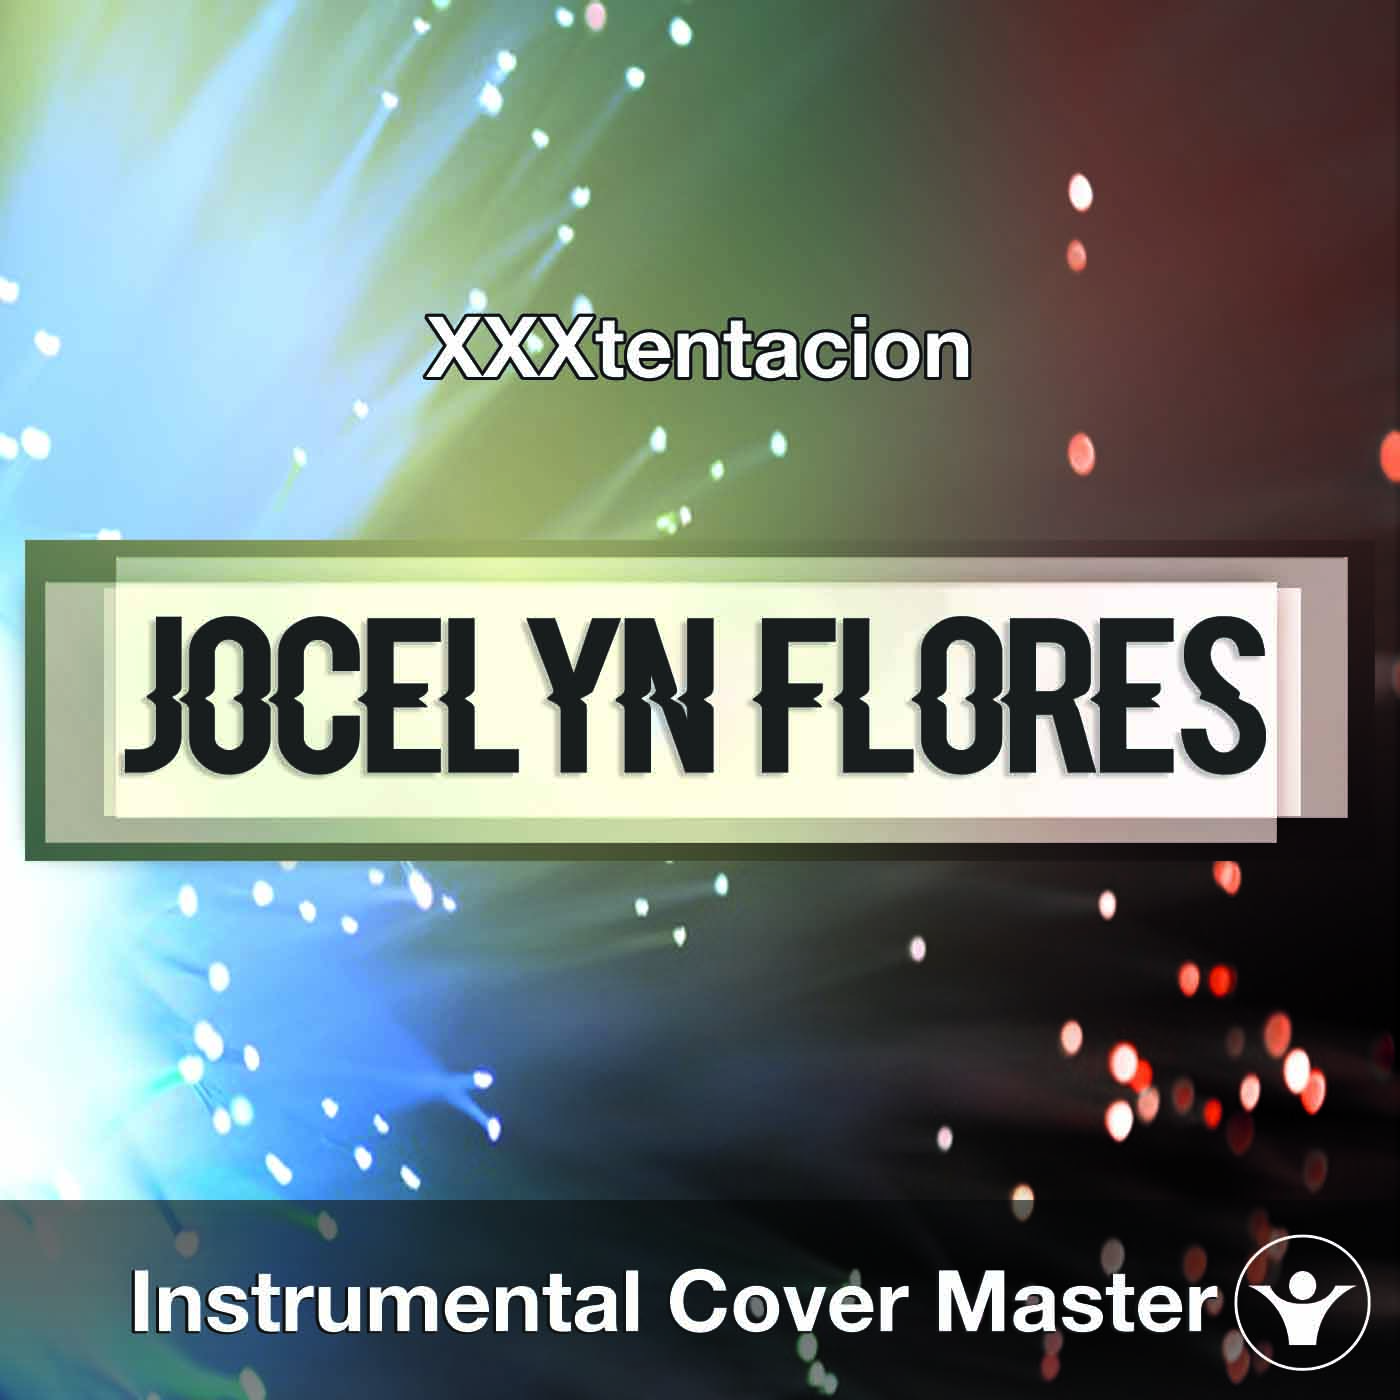 Xxxtentacion Jocelyn Flores Instrumental Cover